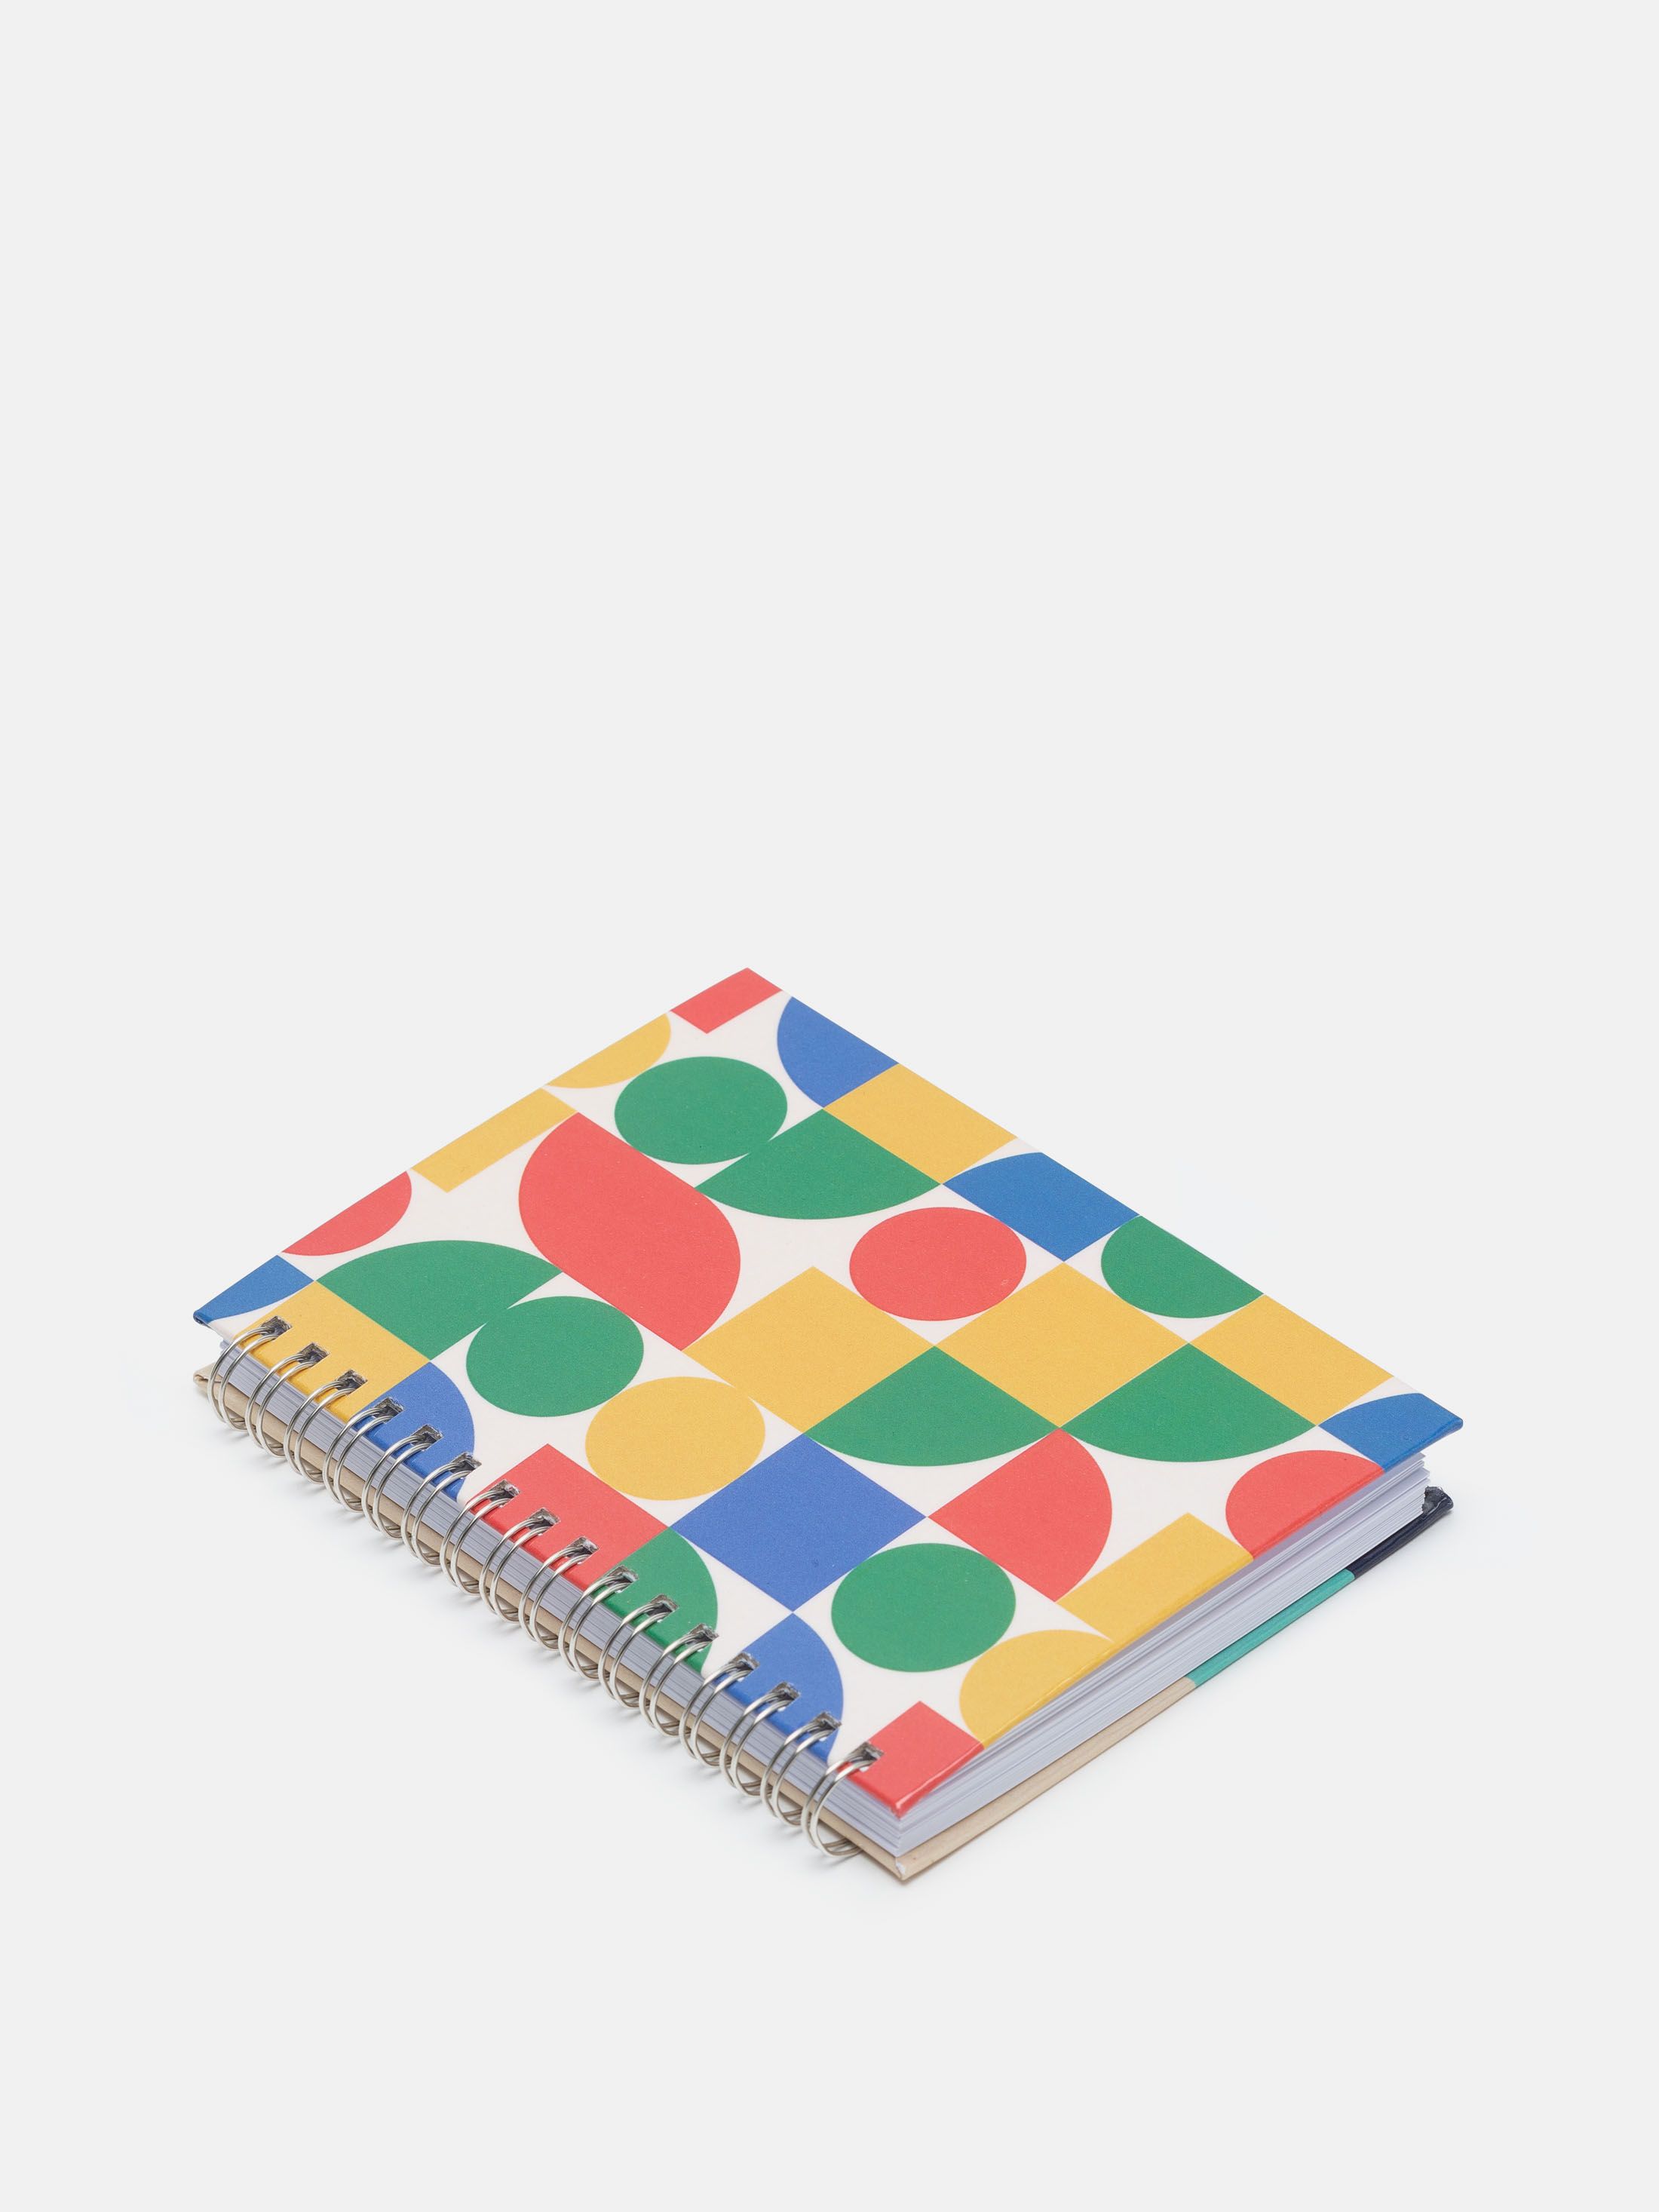 custom spiral bound notebook